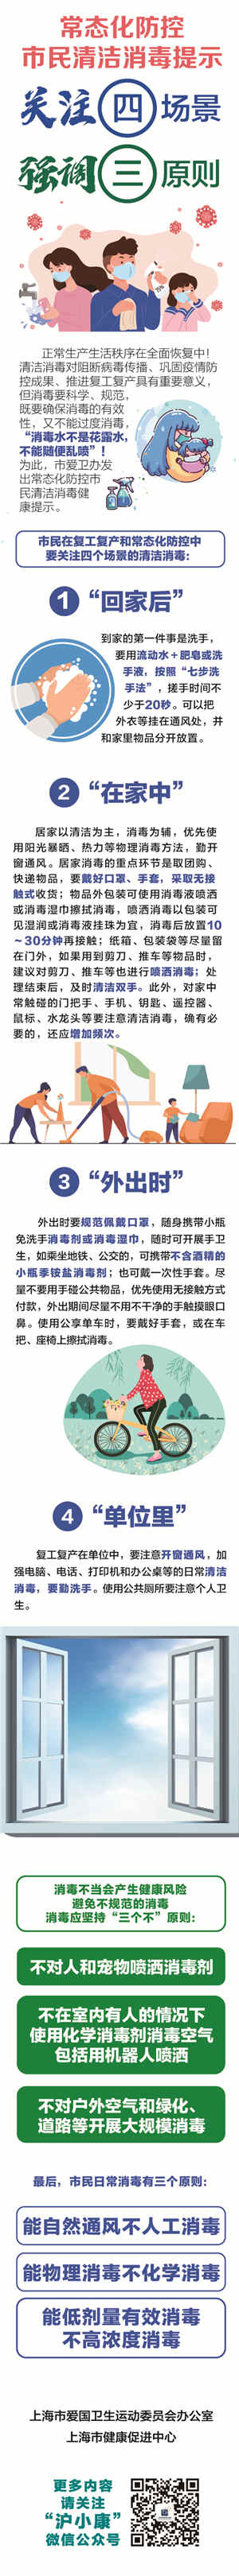 上海市爱卫办宣布常态化防控市民清洁消毒提示